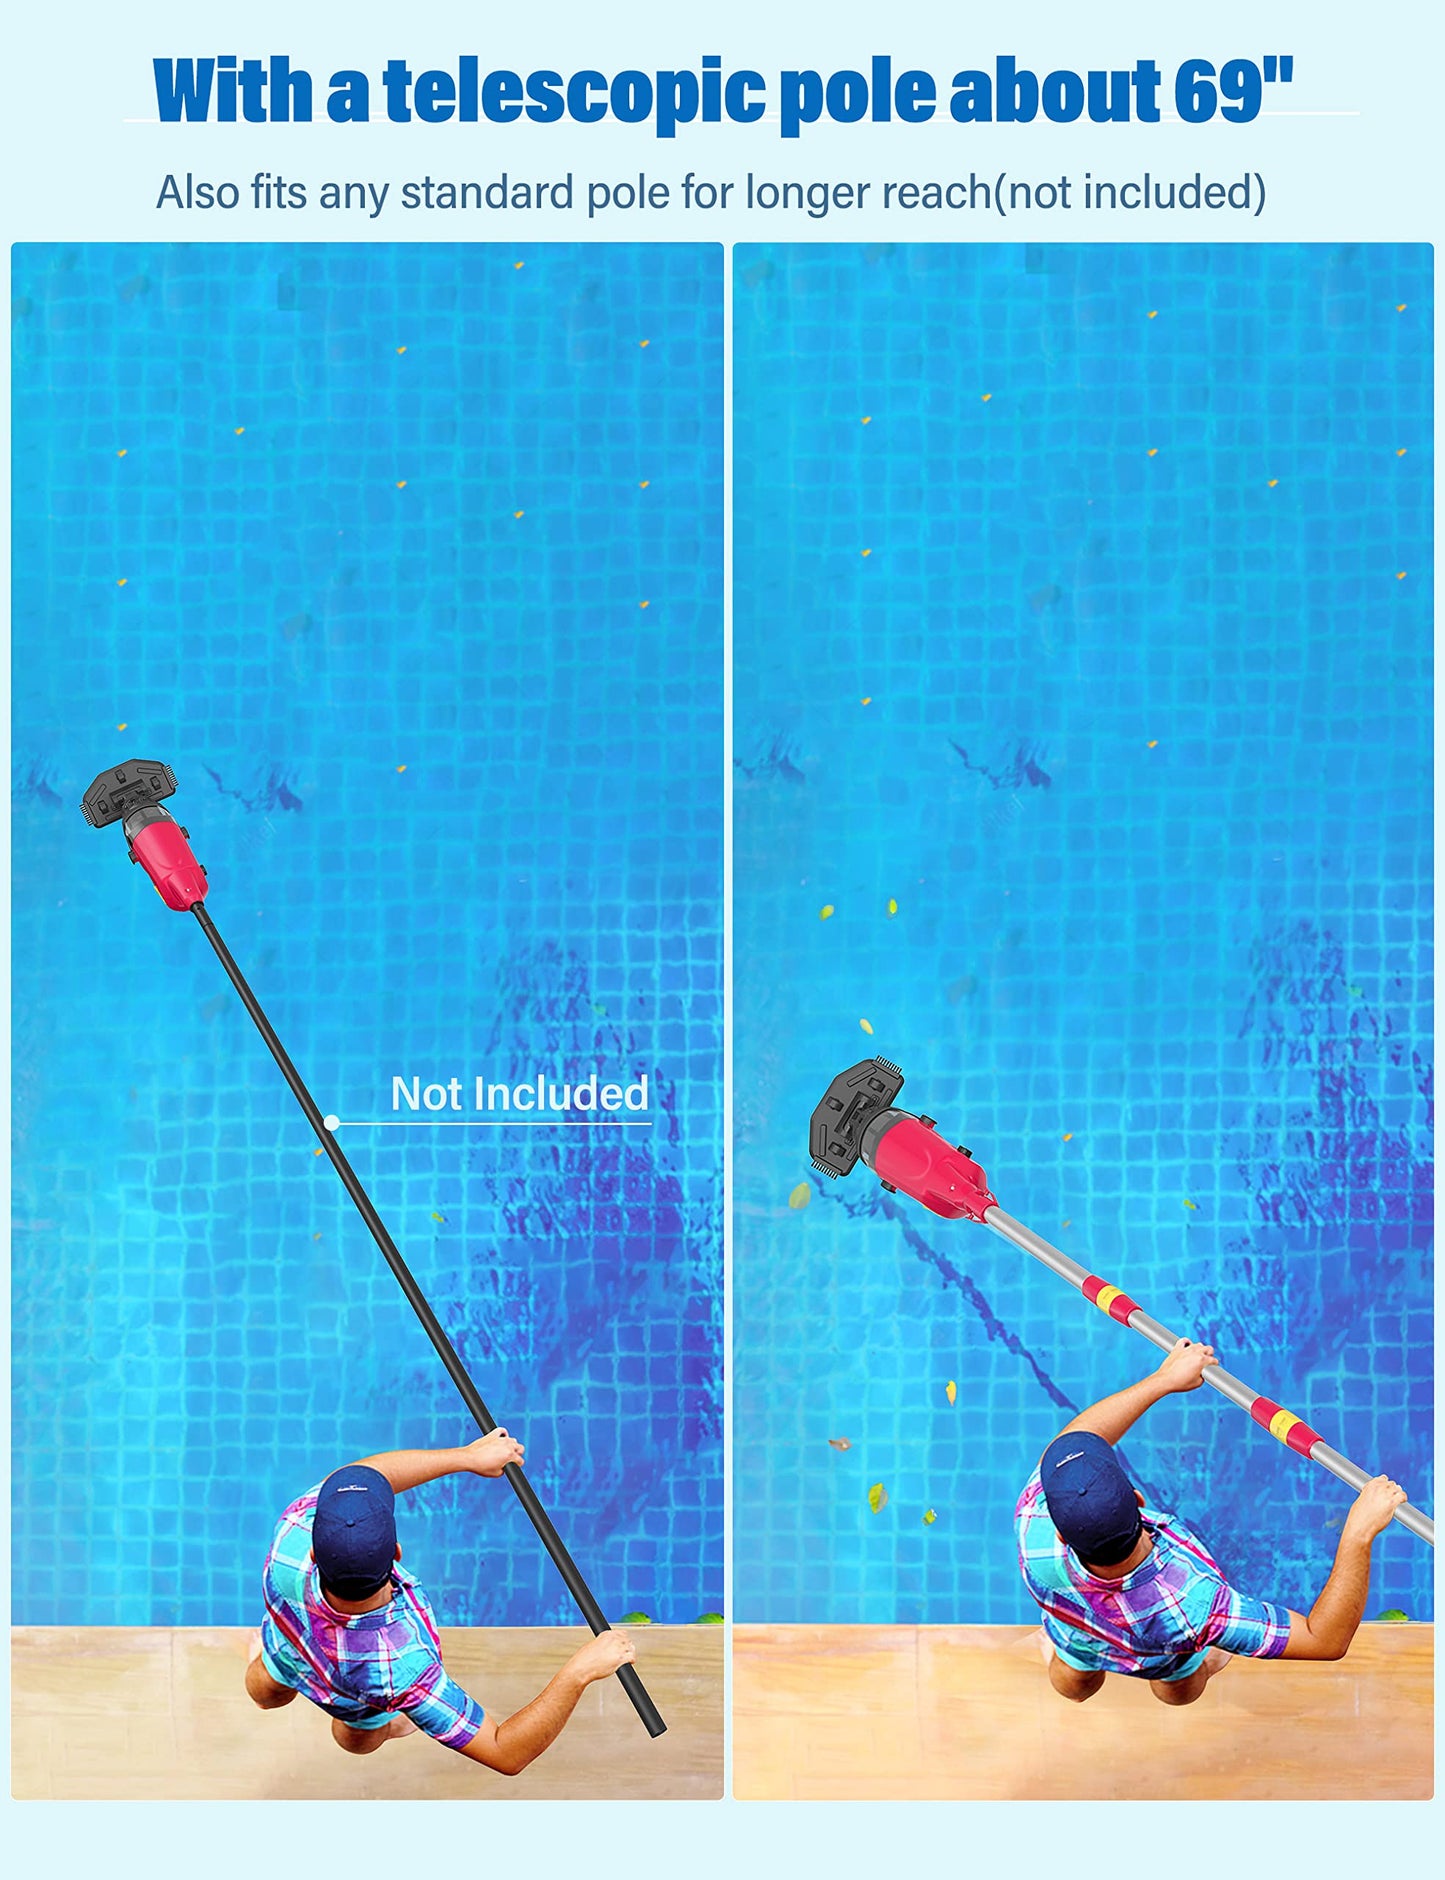 Aspirateur de piscine portatif Efurden, nettoyeur de piscine rechargeable avec durée de fonctionnement jusqu'à 60 minutes, idéal pour les piscines hors sol, les spas et les bains à remous pour le sable et les débris, rouge carmin rose